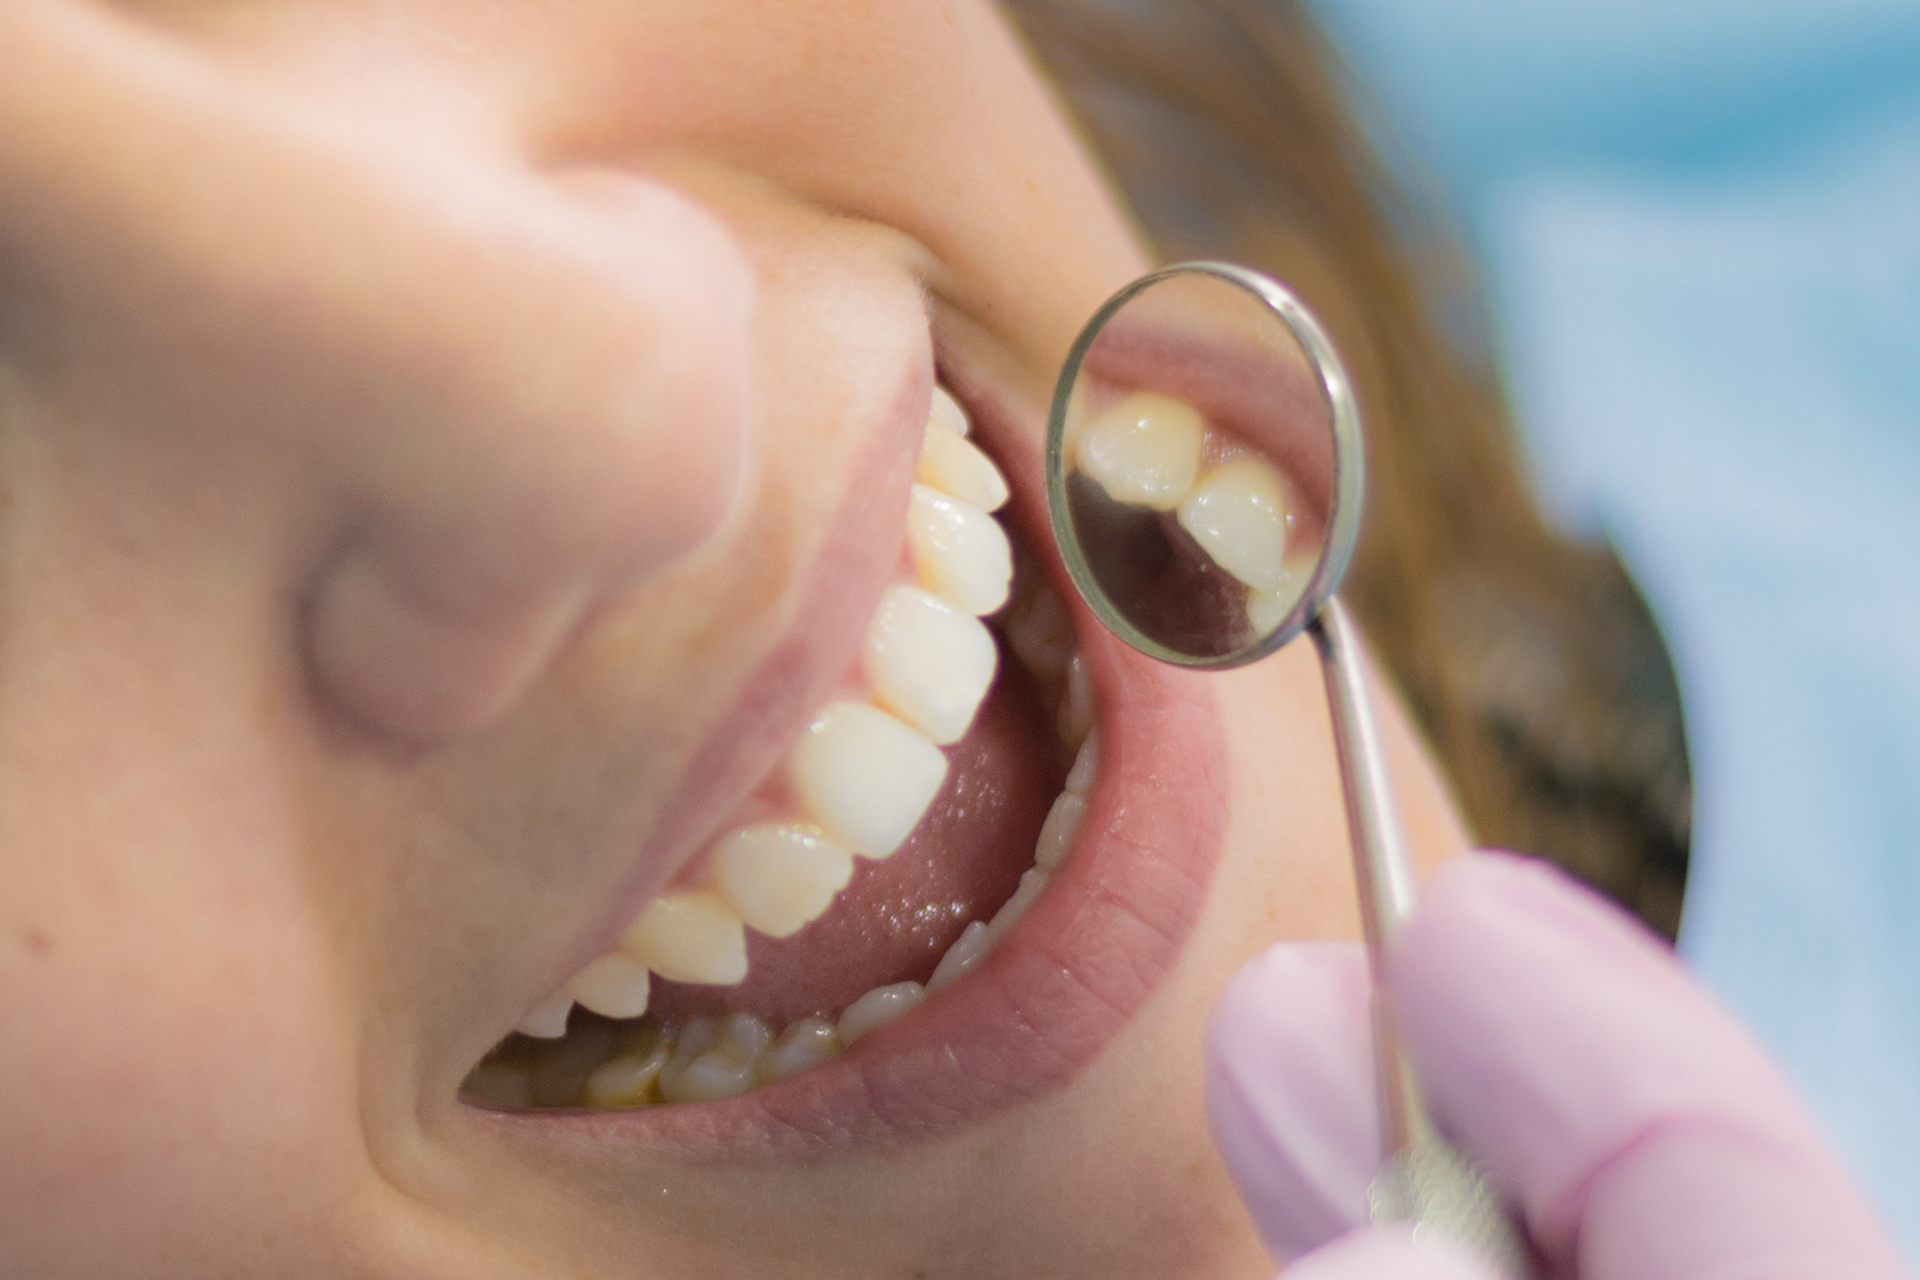 Dentista inspeccionando boca